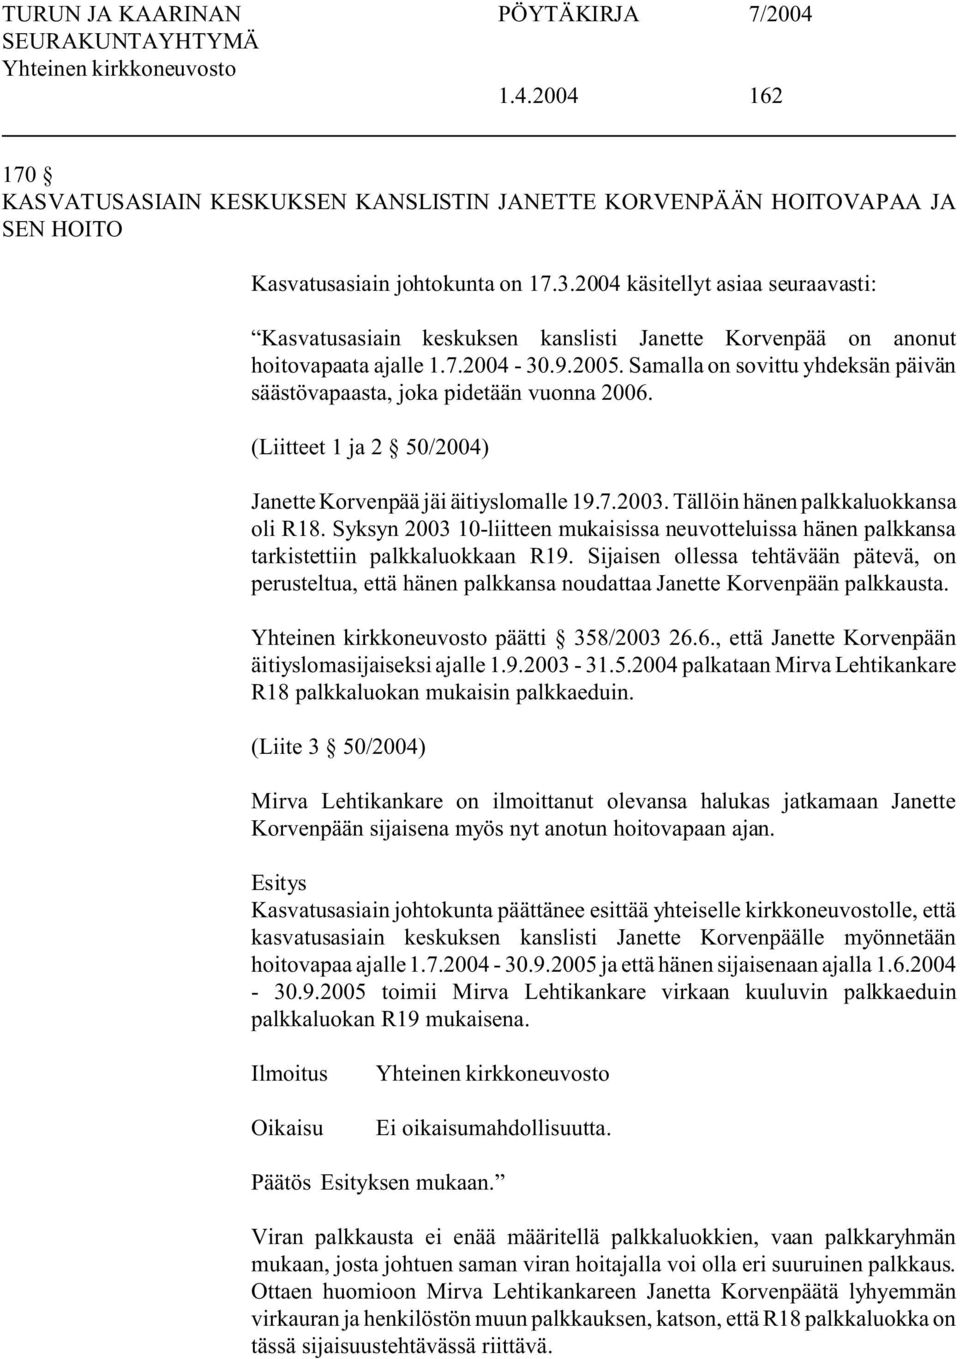 Samalla on sovittu yhdeksän päivän säästövapaasta, joka pidetään vuonna 2006. (Liitteet 1 ja 2 50/2004) Janette Korvenpää jäi äitiyslomalle 19.7.2003. Tällöin hänen palkkaluokkansa oli R18.